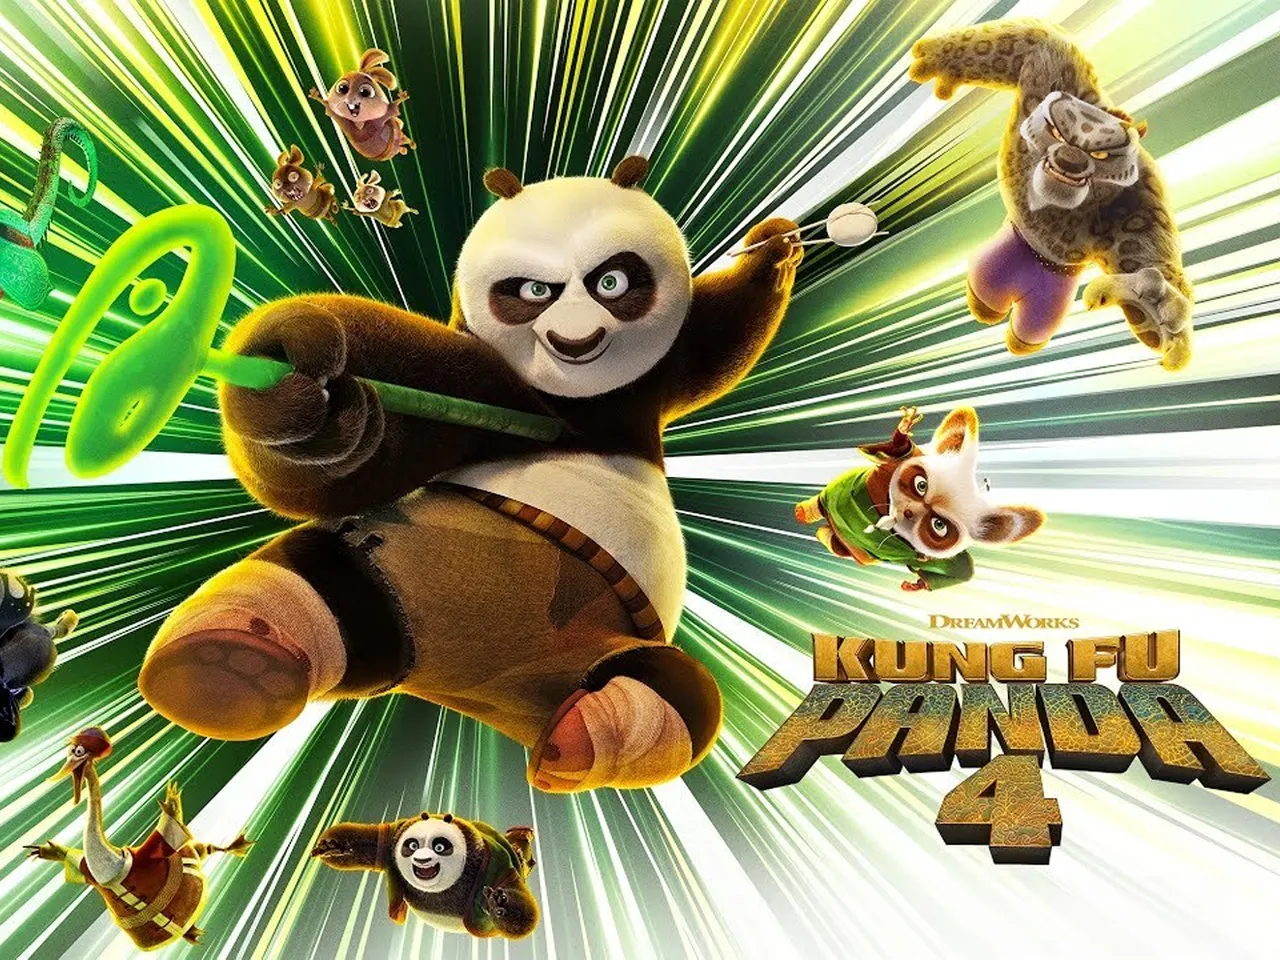 Bringing back Po with nostalgia & humour: Inside Kung Fu Panda 4’s marketing